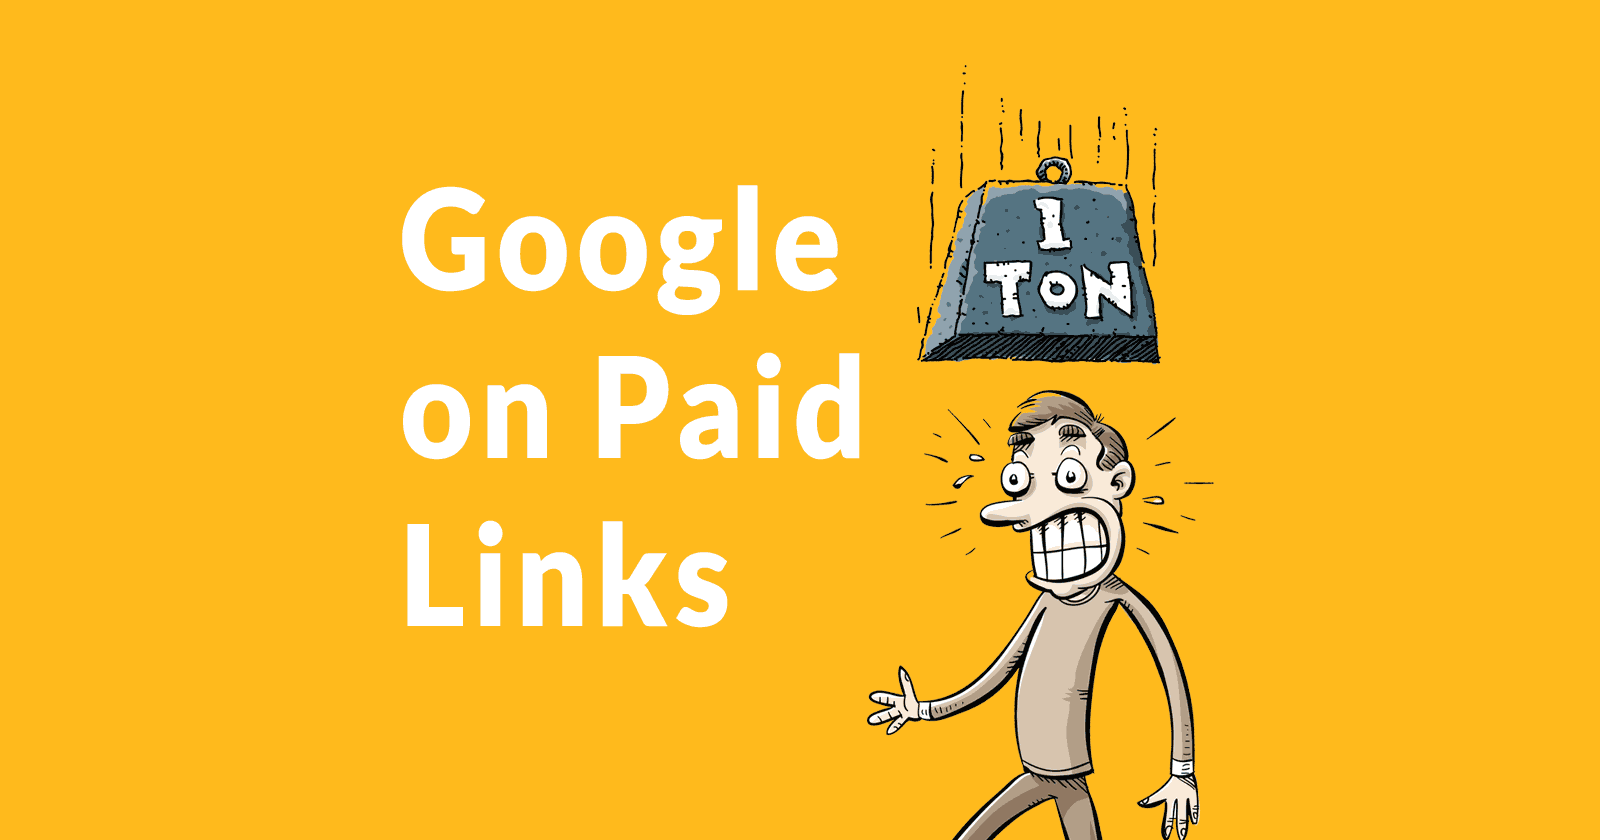 Google on paid links